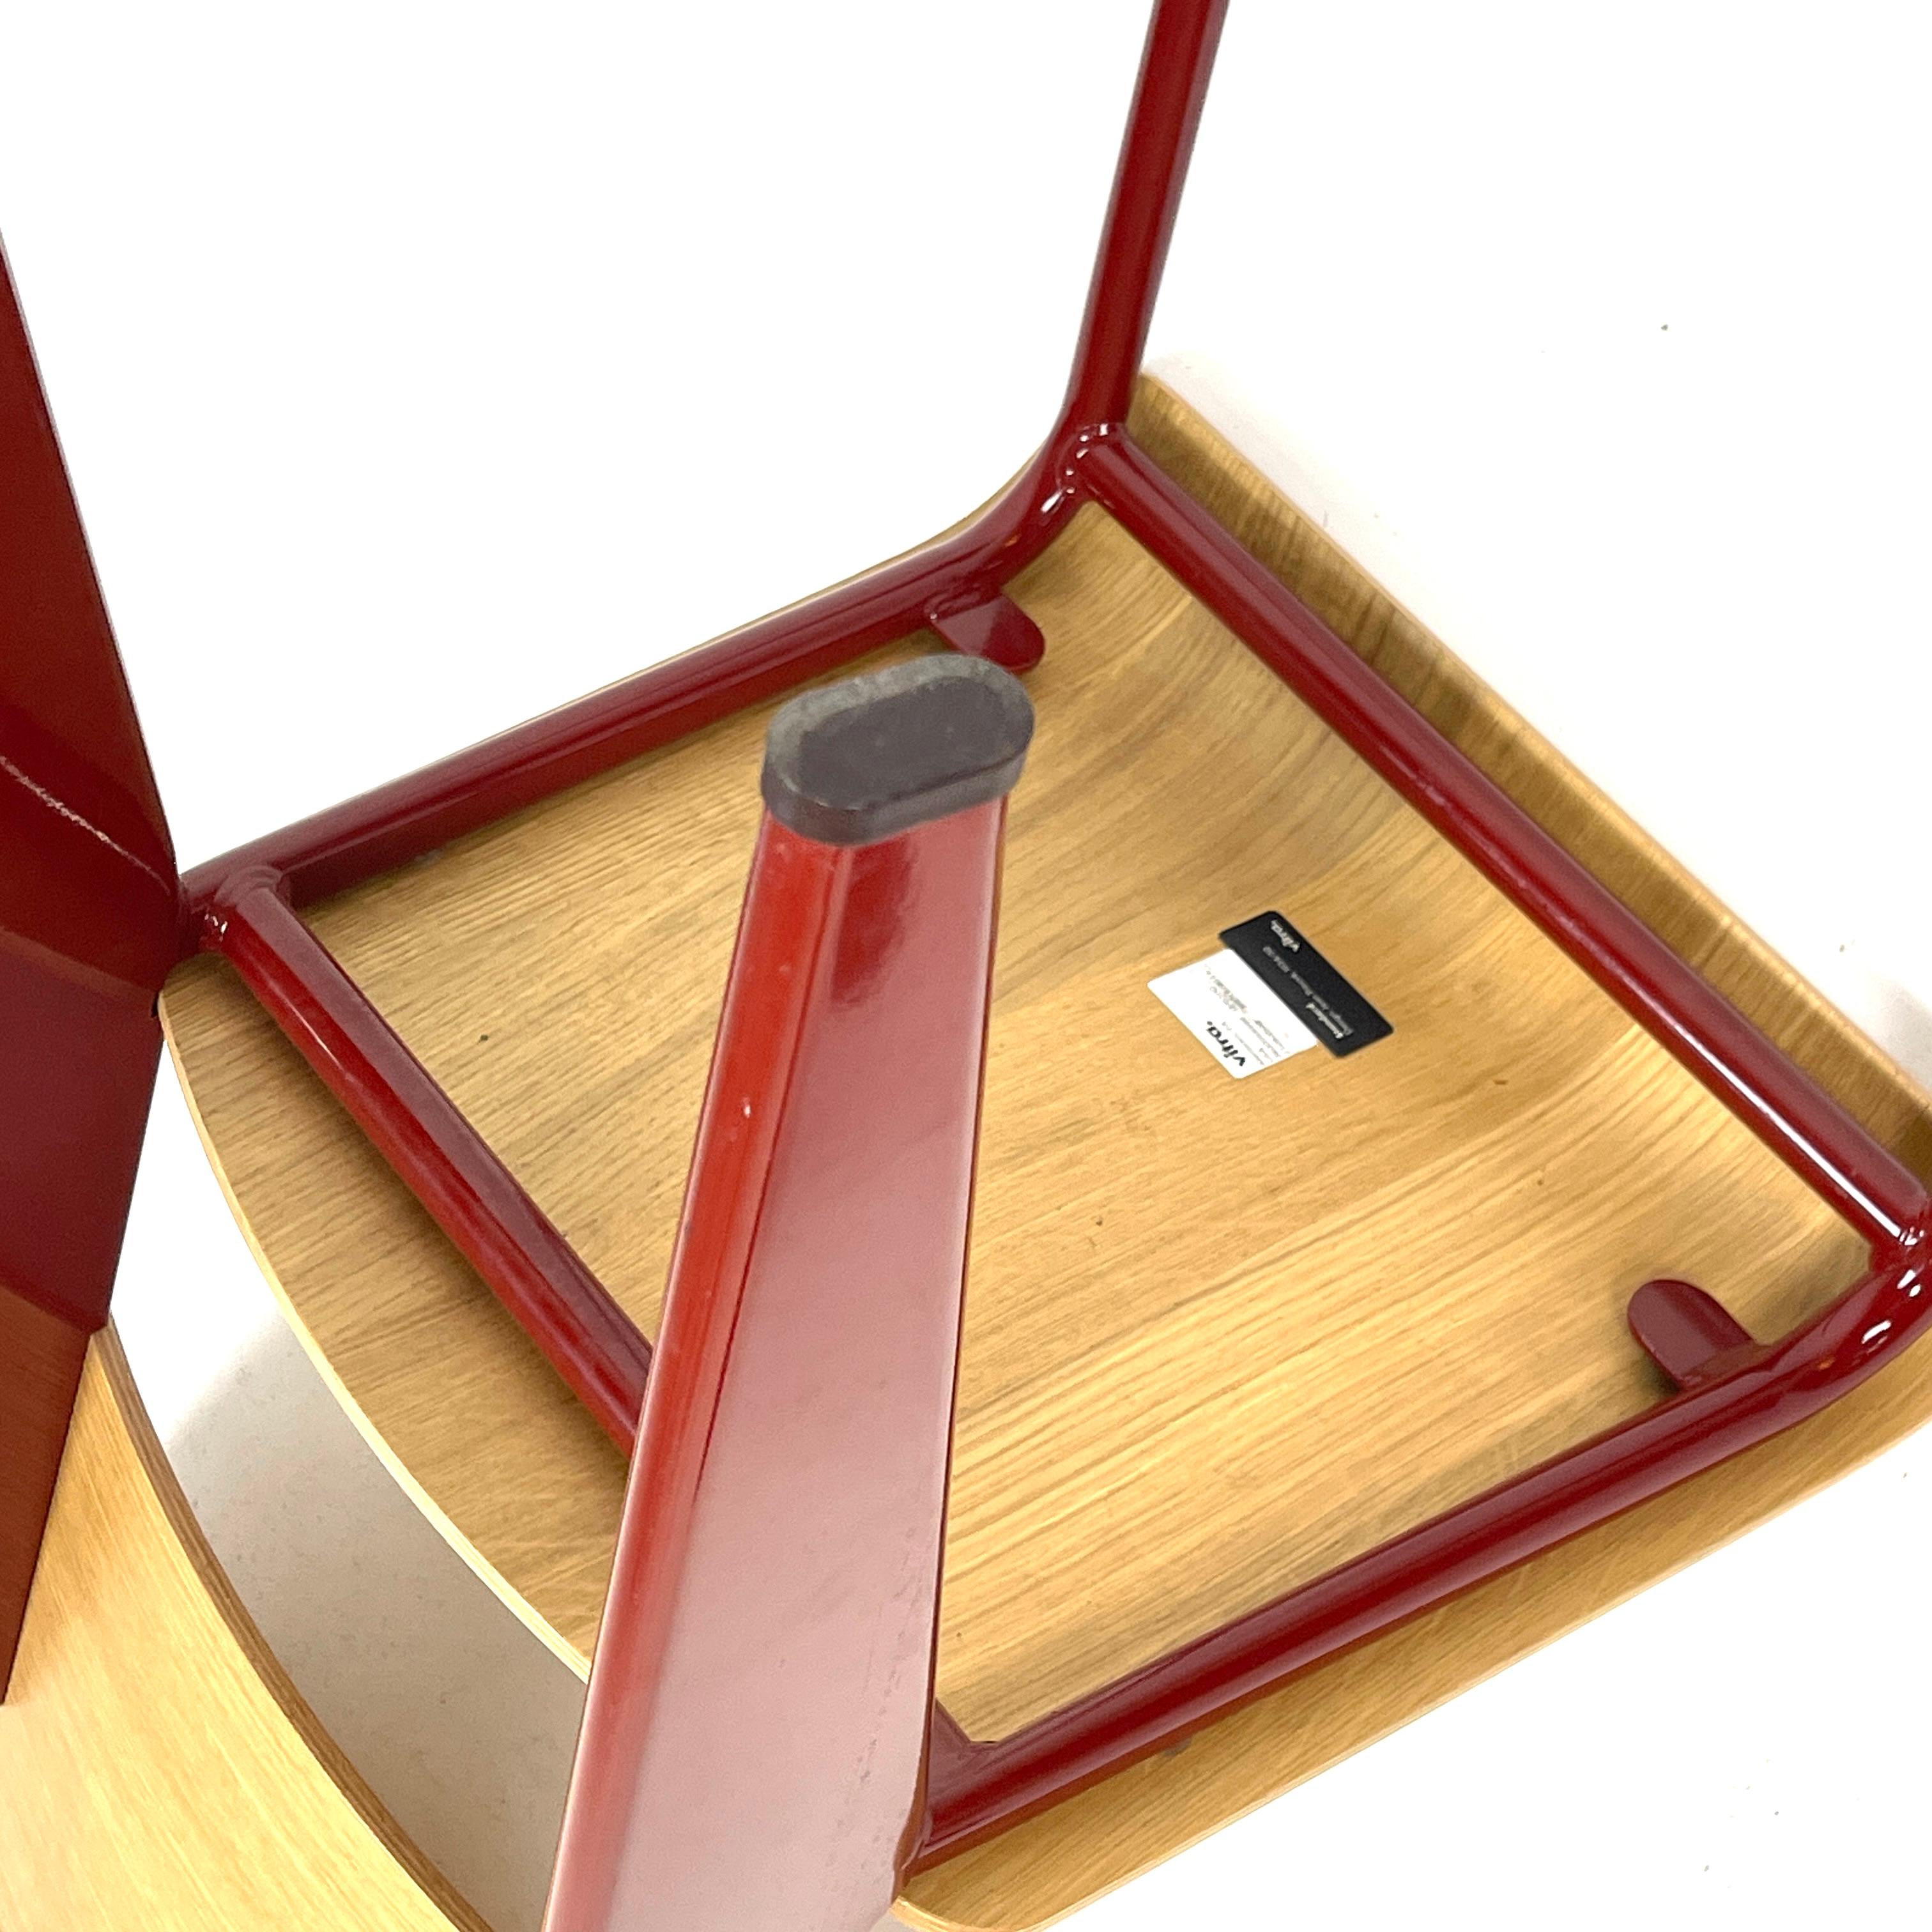 La chaise de salle à manger Standard Prouve, conçue par Jean Prouve, est l'incarnation de la sophistication moderne. Sa silhouette luxueuse attire le regard avec ses pieds arrière en acier cunéiforme, sa structure souple en acier tubulaire et les